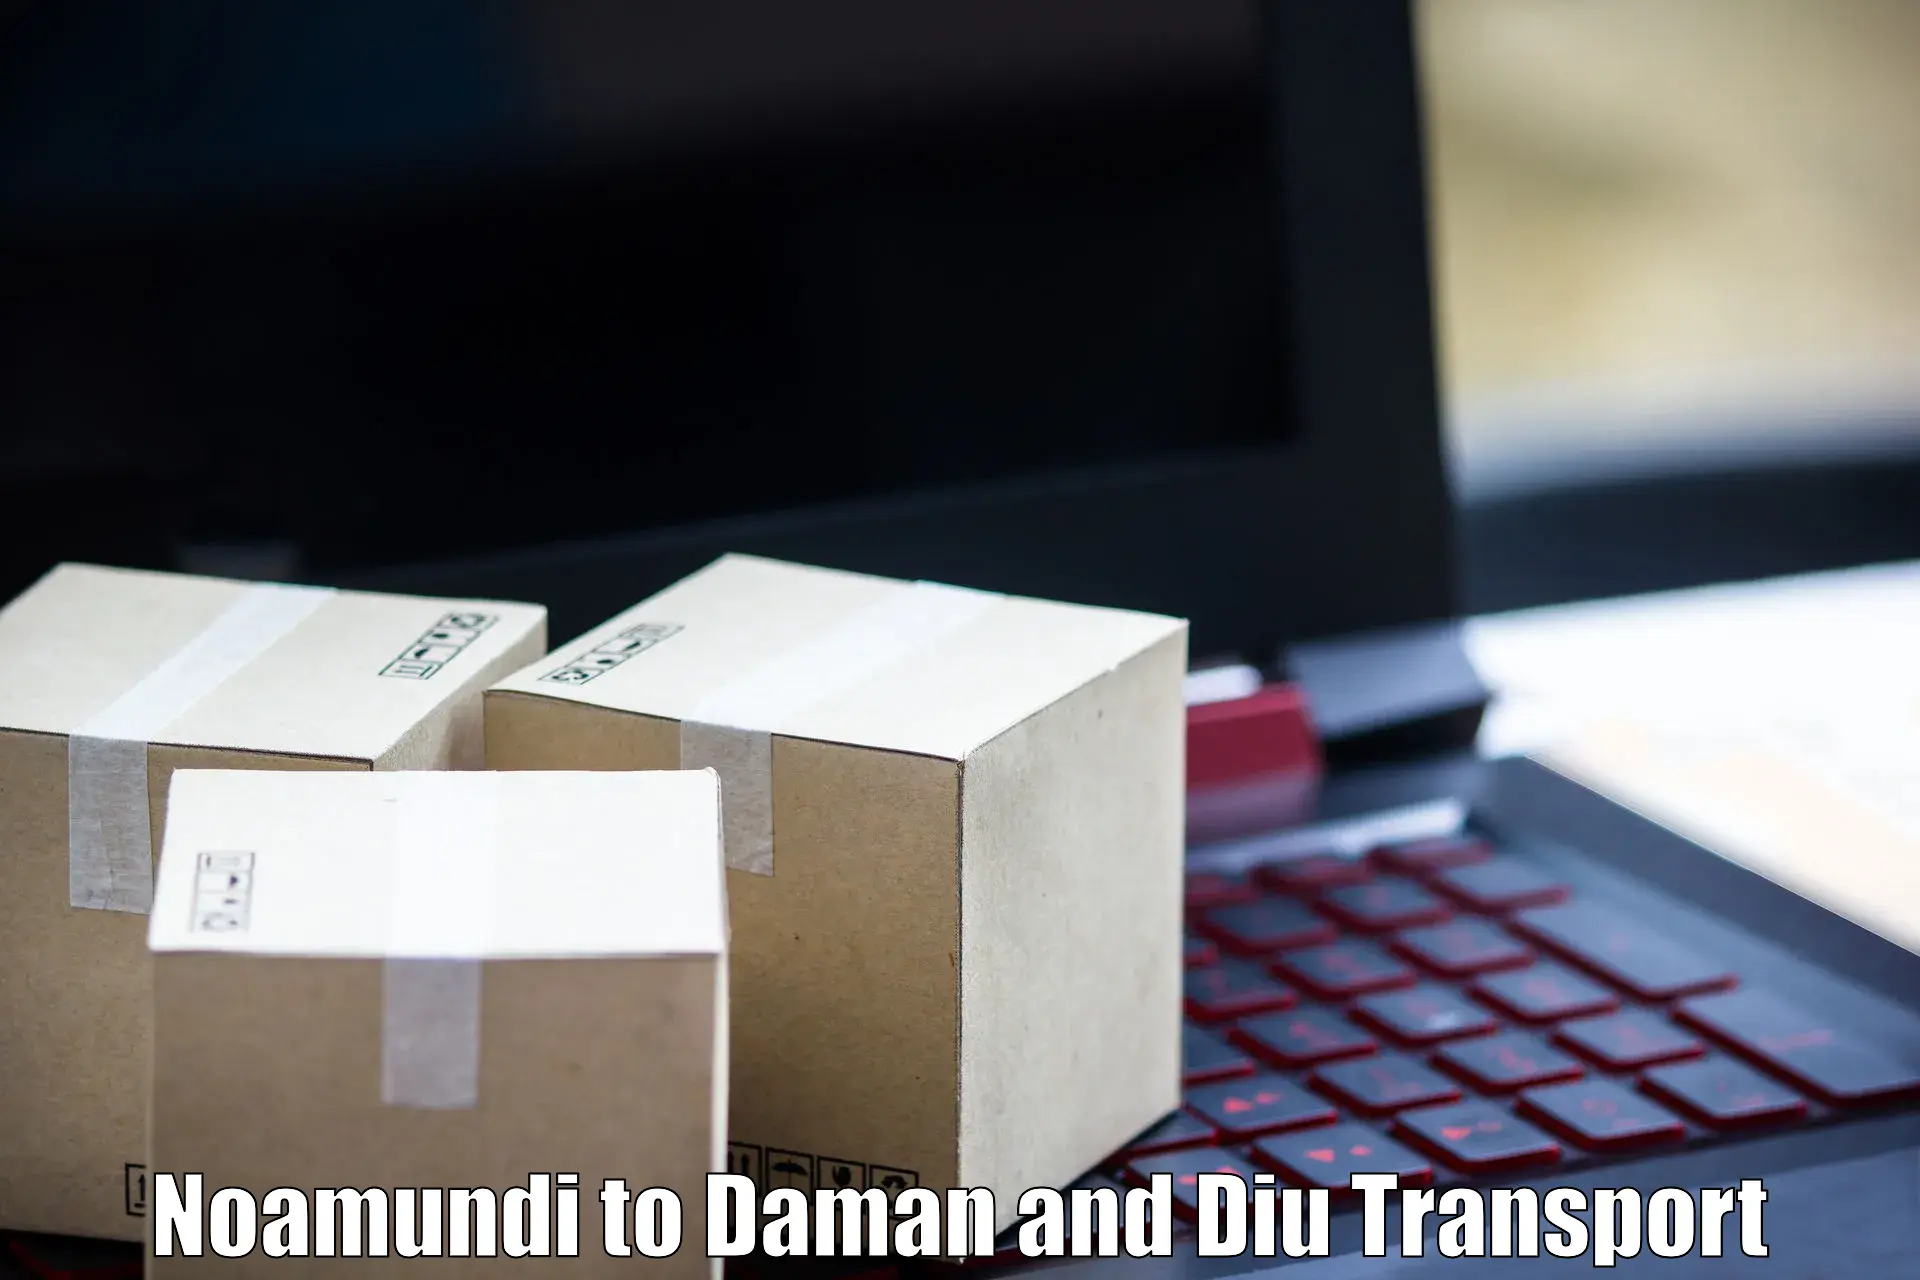 Transport in sharing Noamundi to Daman